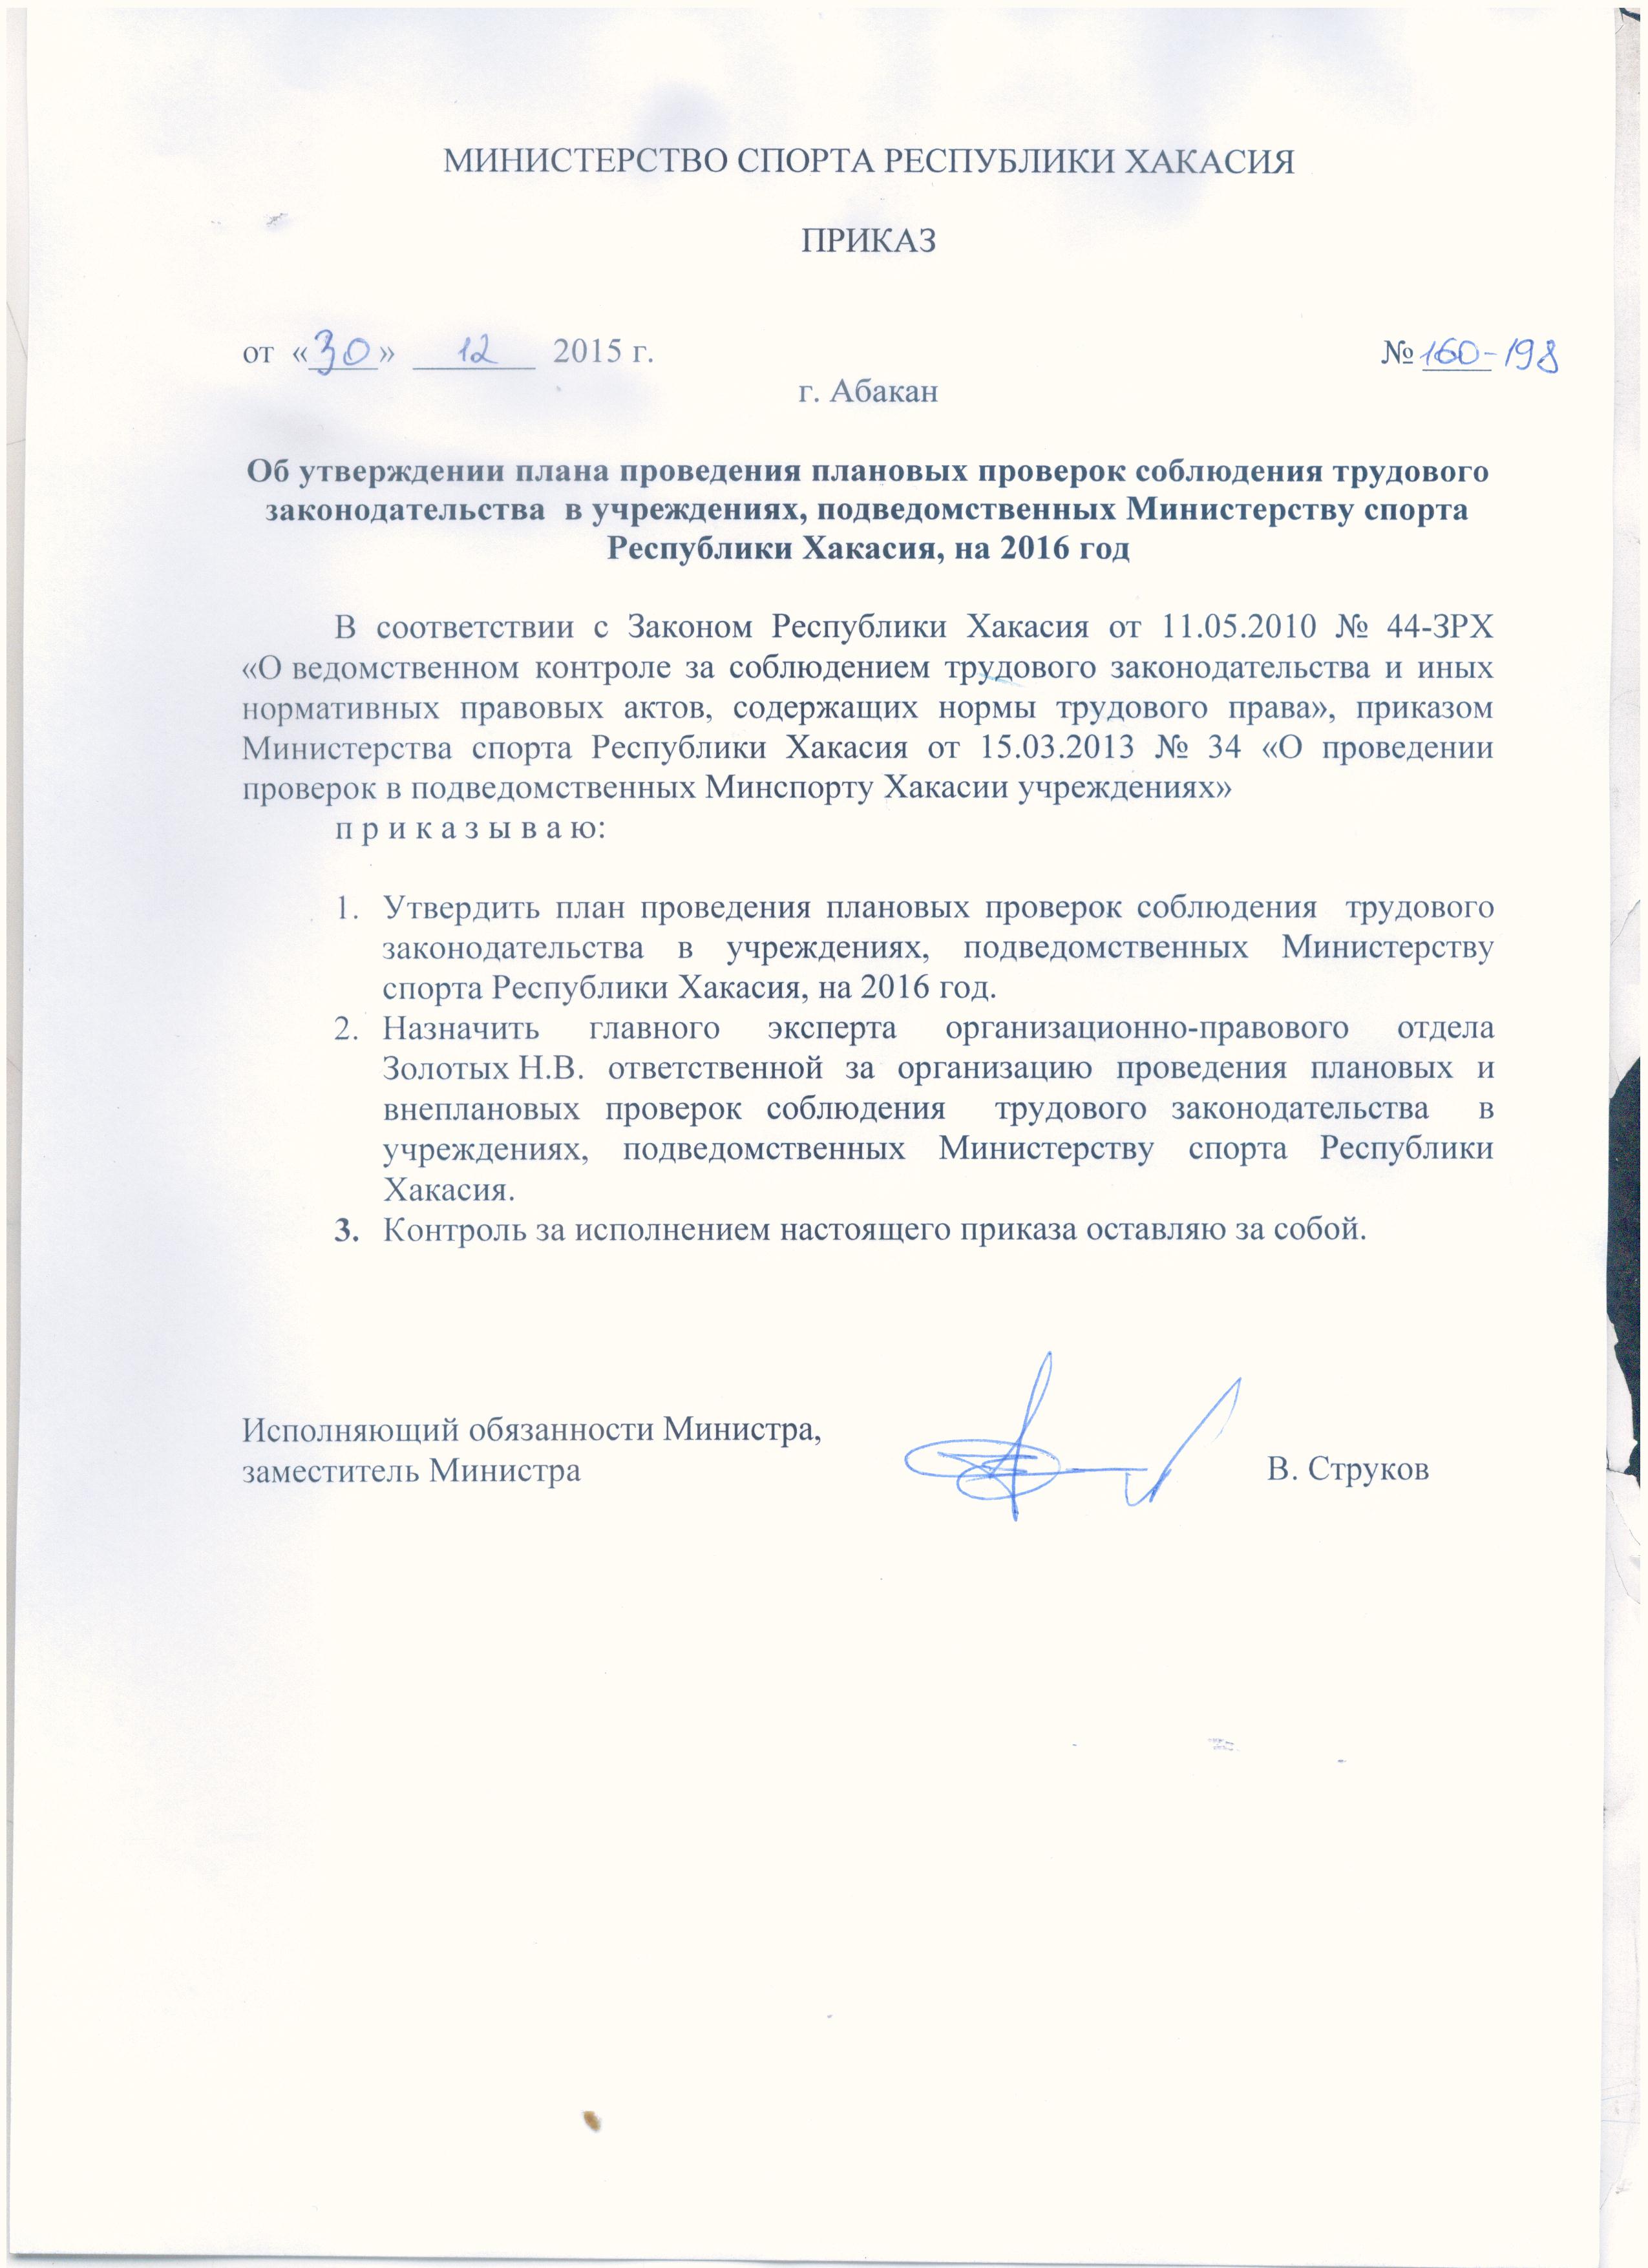 Приказ Министерства о замещении должности. Приказ №050-69-п Министерство Республики Хакасия.